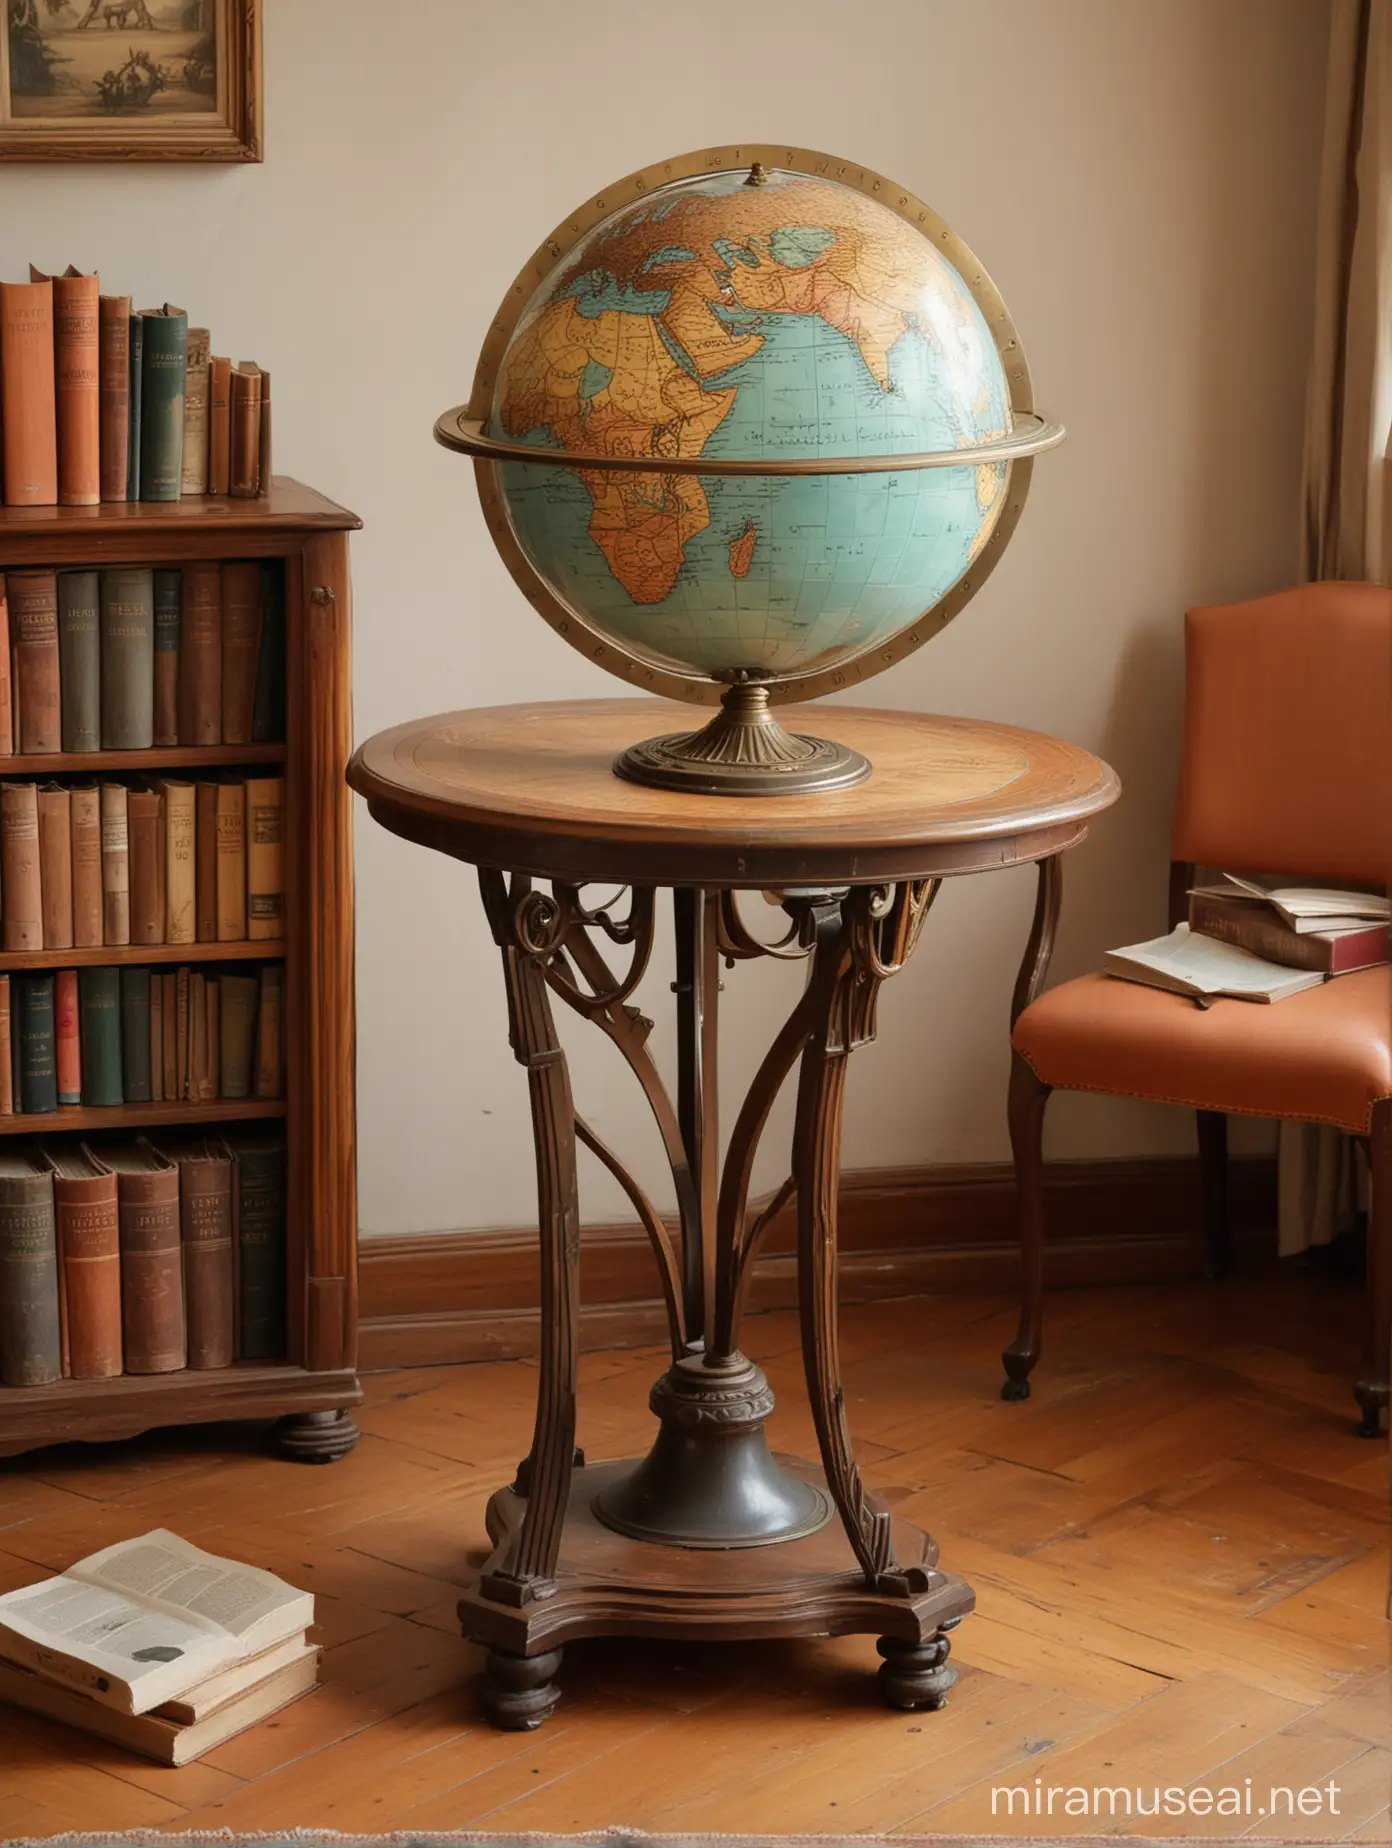 Art nouveau luz senital .
un globo terraqueo antiguo sobre mesa con patas . Junto a el hay una mesa con reloj y libros . hay Libros en el piso